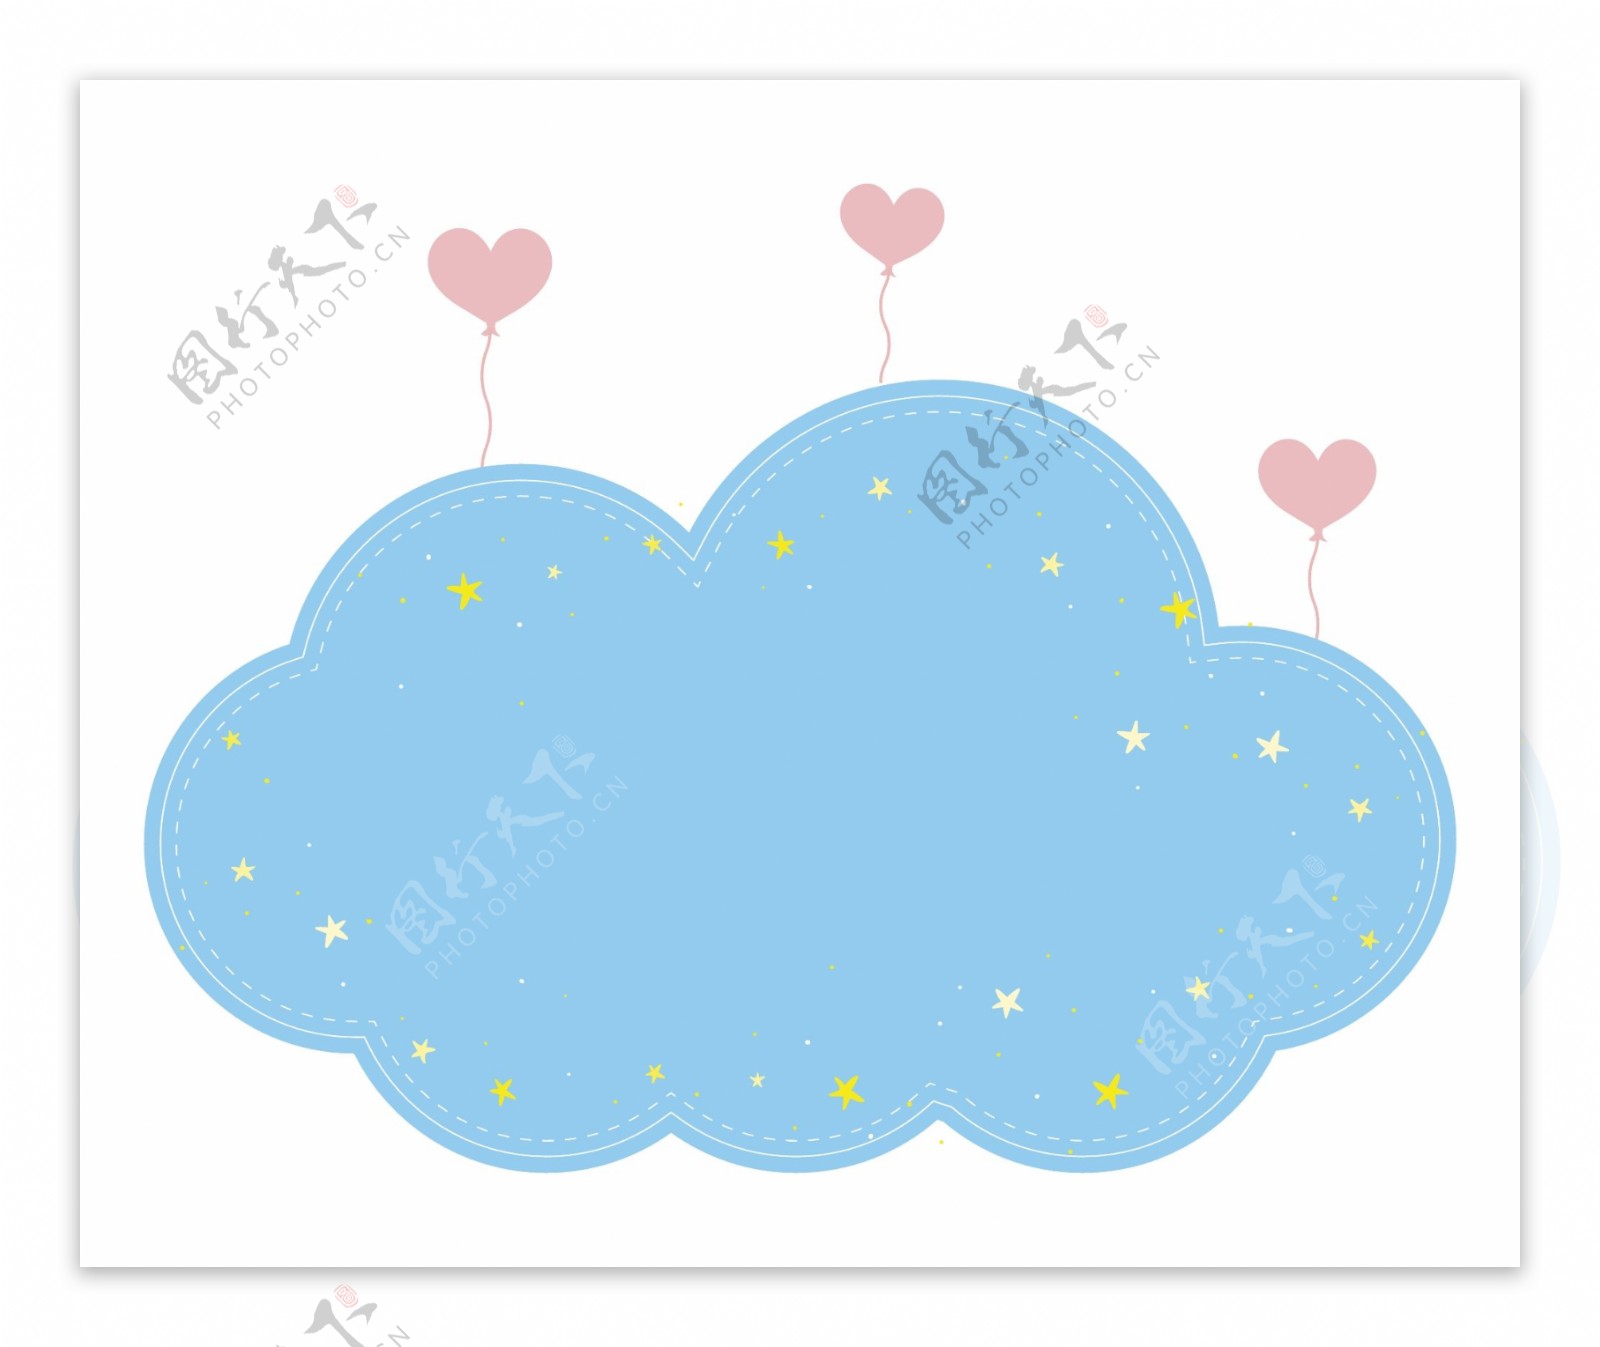 可爱蓝色云朵矢量造型爱心气球免抠边框